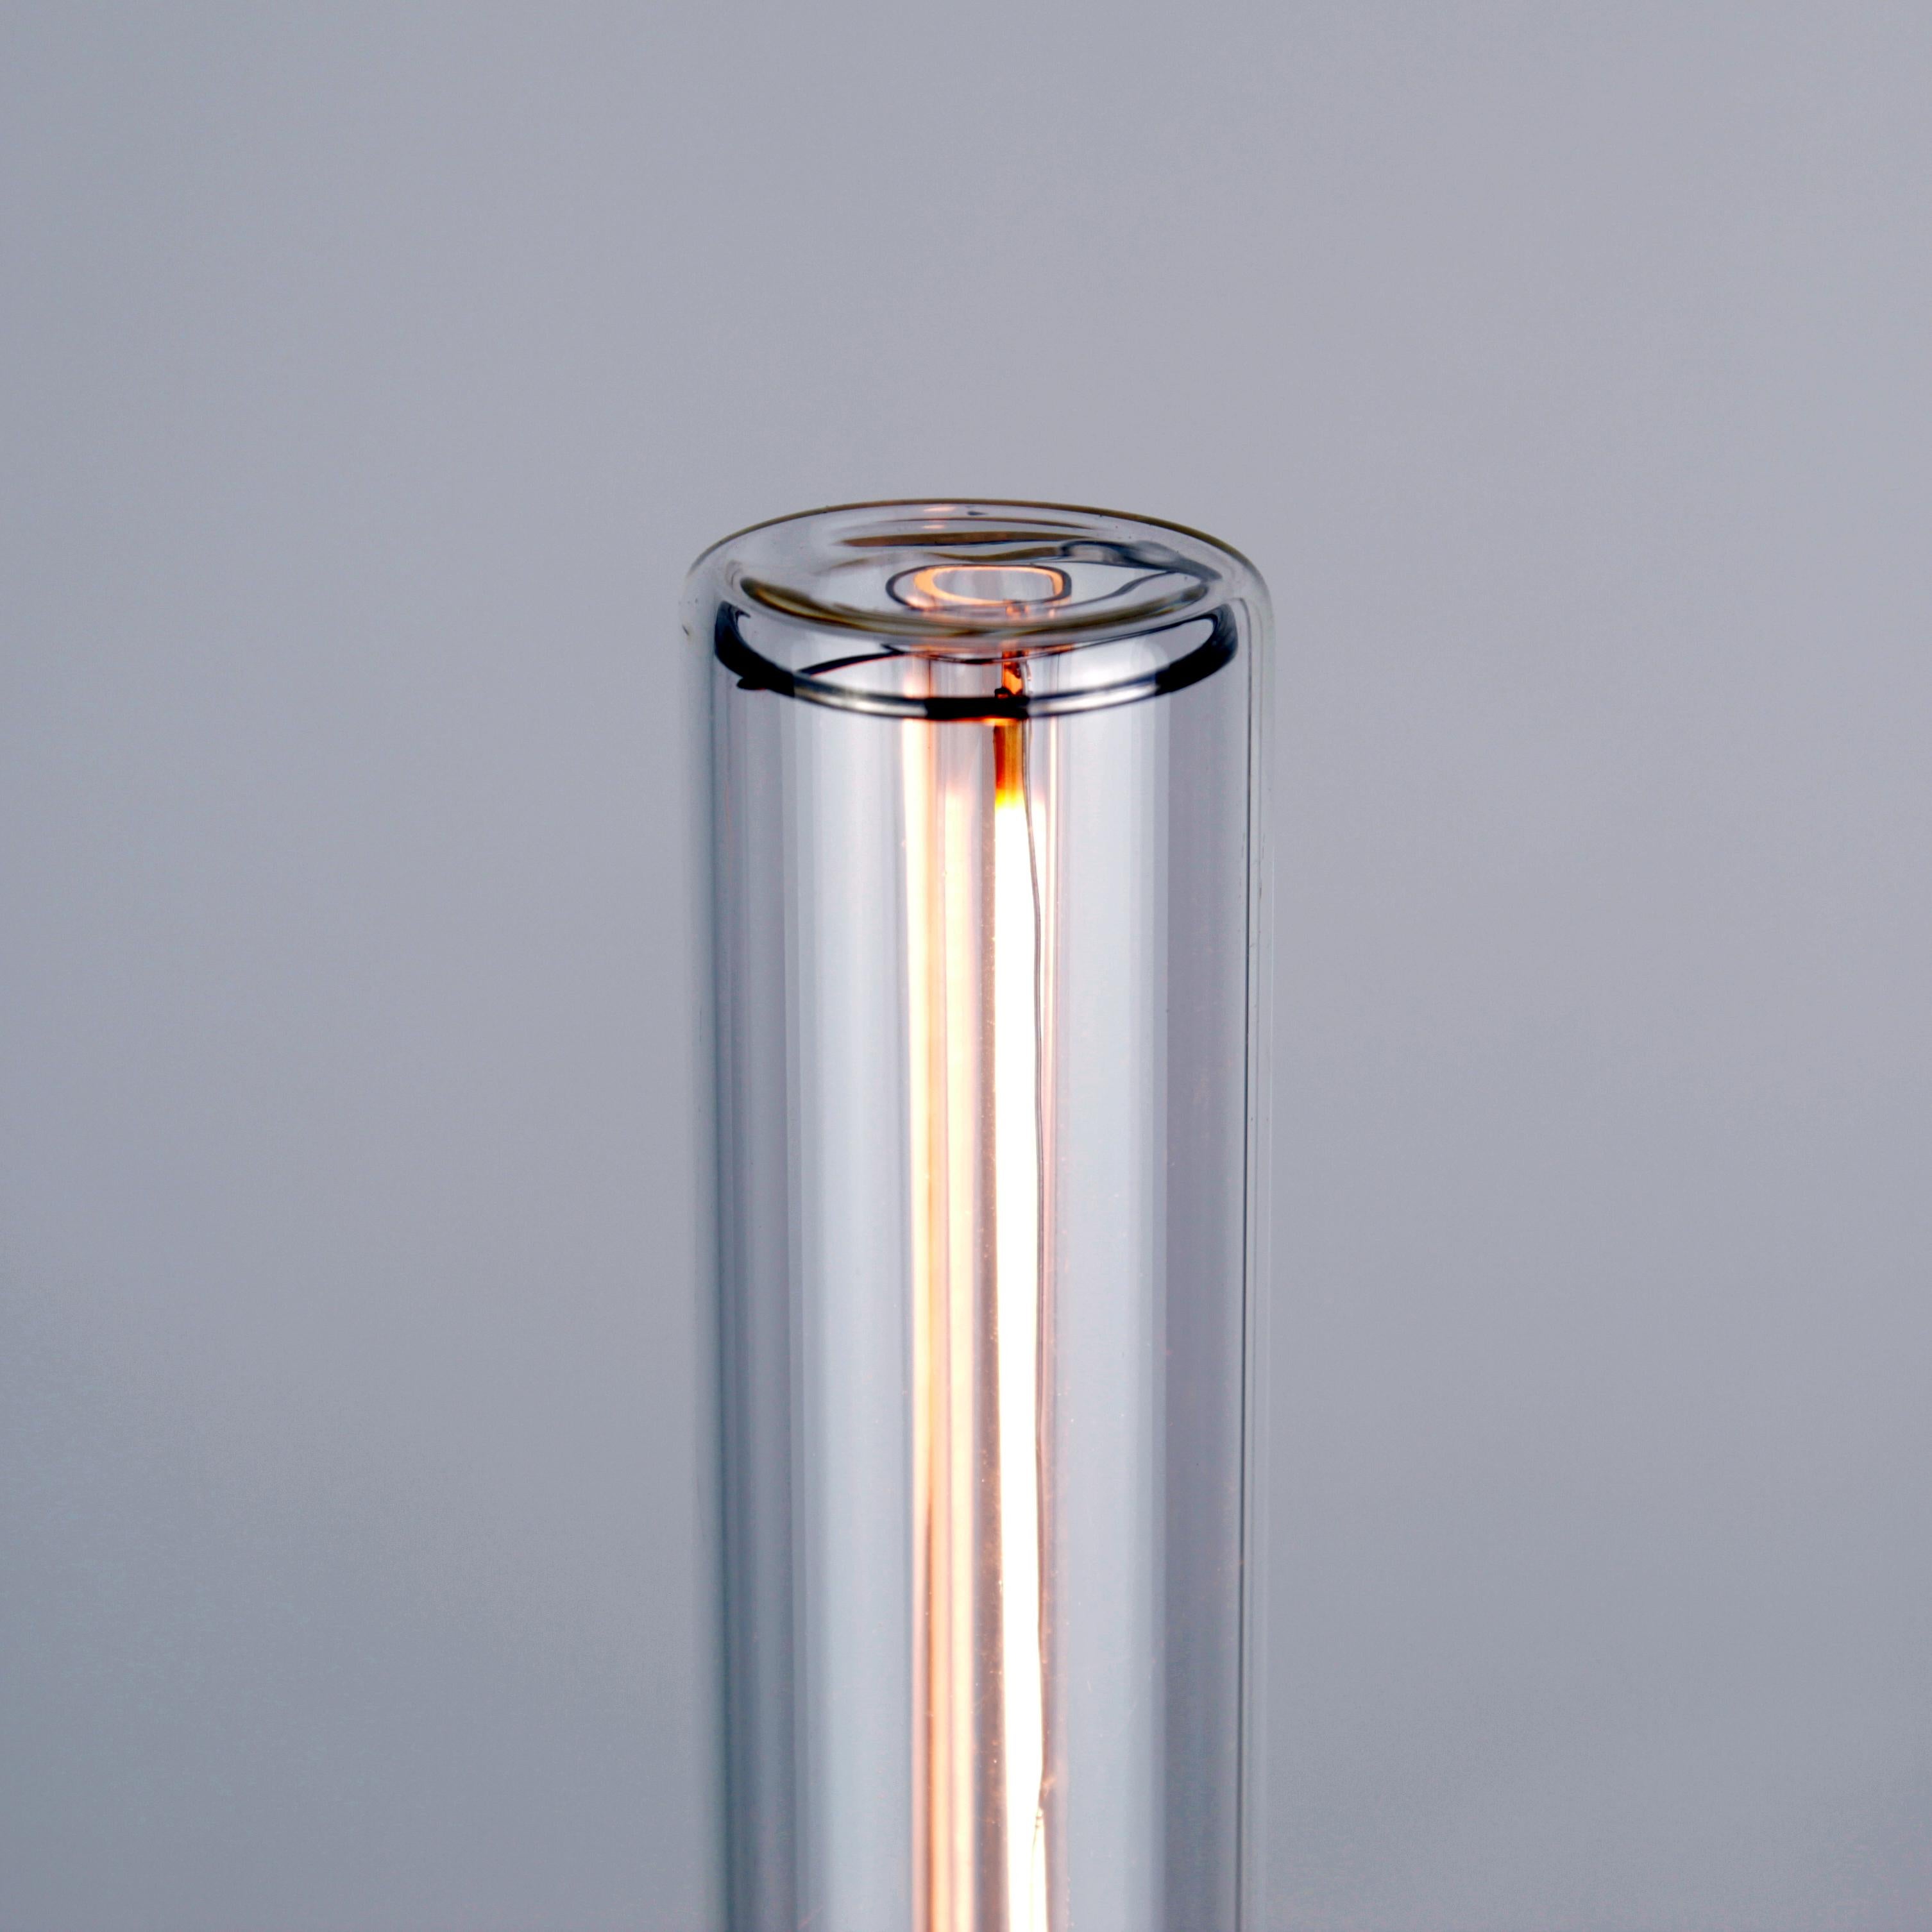 Die von Daikon Studio entworfenen und speziell für Daikon-Leuchten hergestellten flachen Glühbirnen ergänzen unsere eckigen und geometrischen Leuchten. Die zarten LED-Streifen werden sorgfältig von Hand in eine doppelwandige, mundgeblasene Glasröhre